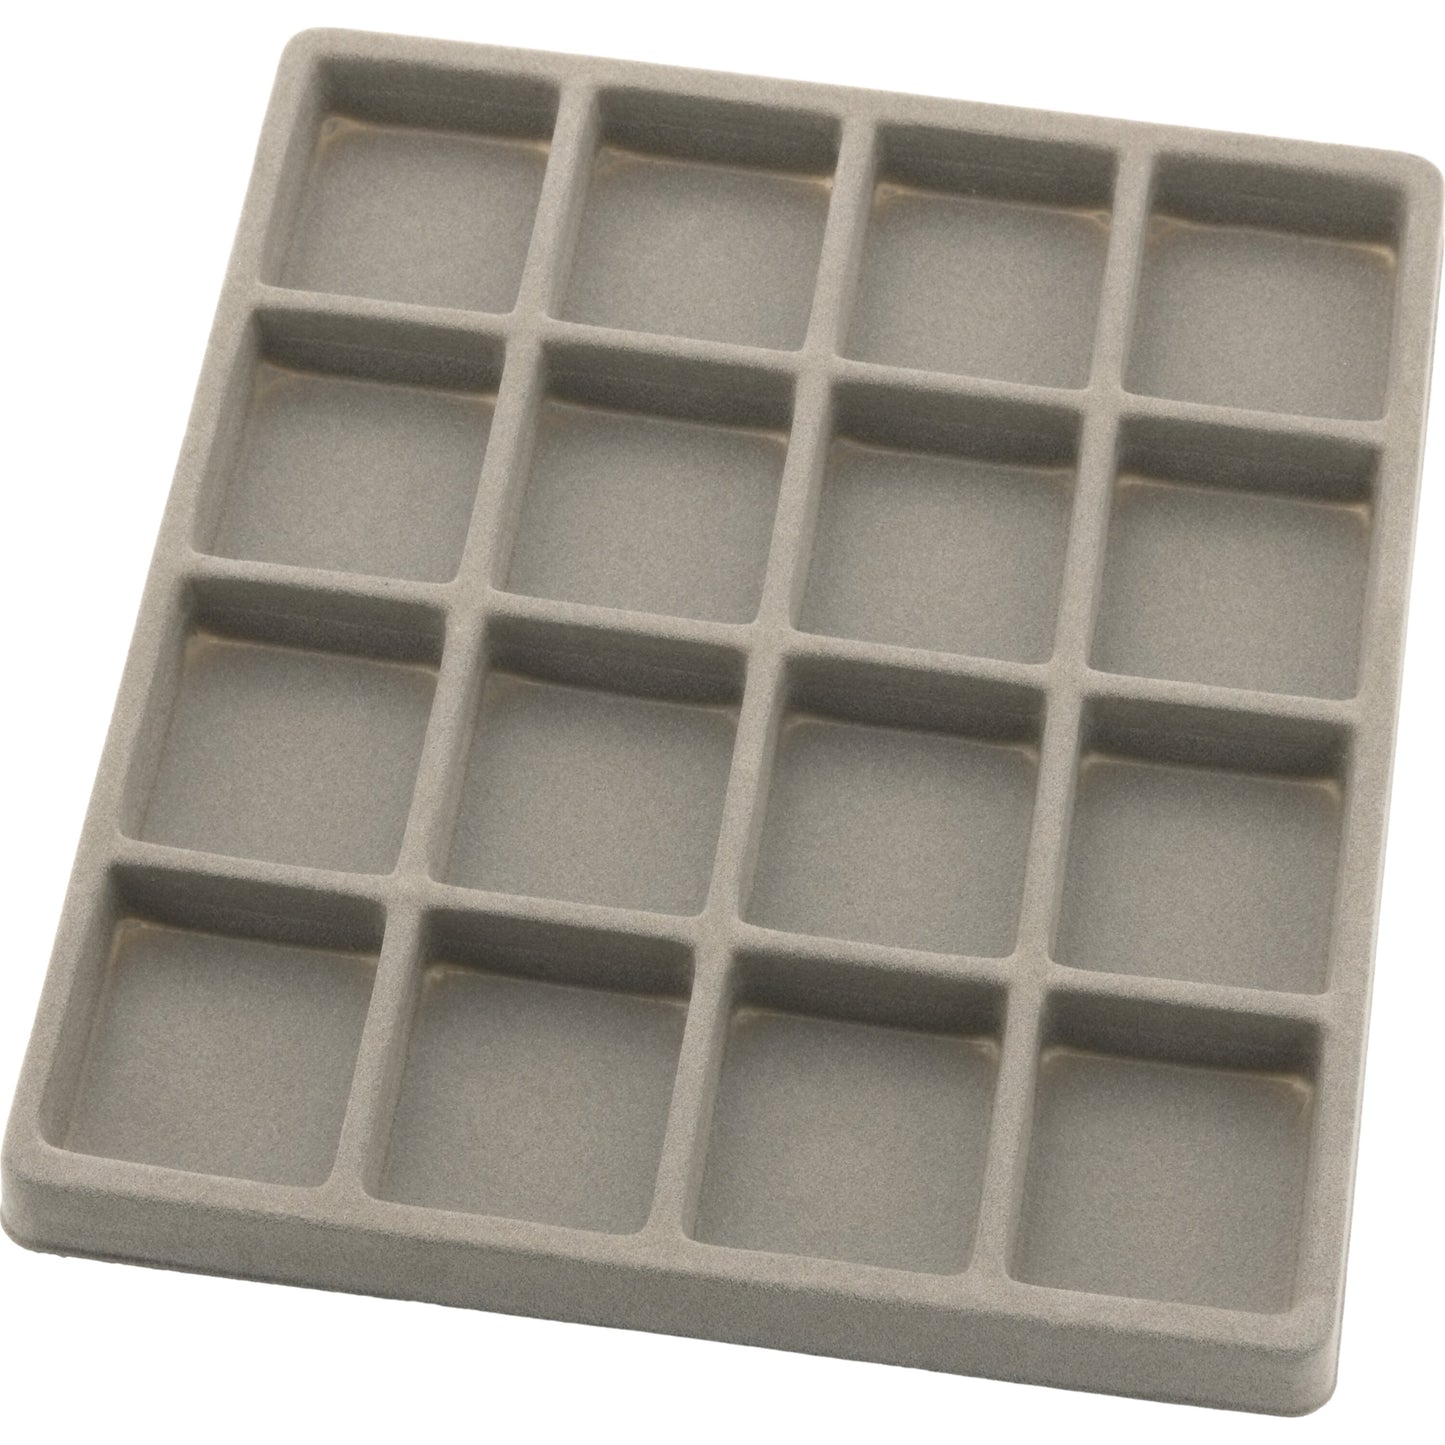 10 Gray Flocked Display Tray Inserts (5) 5 Slot & (5) 16 Slot Trays